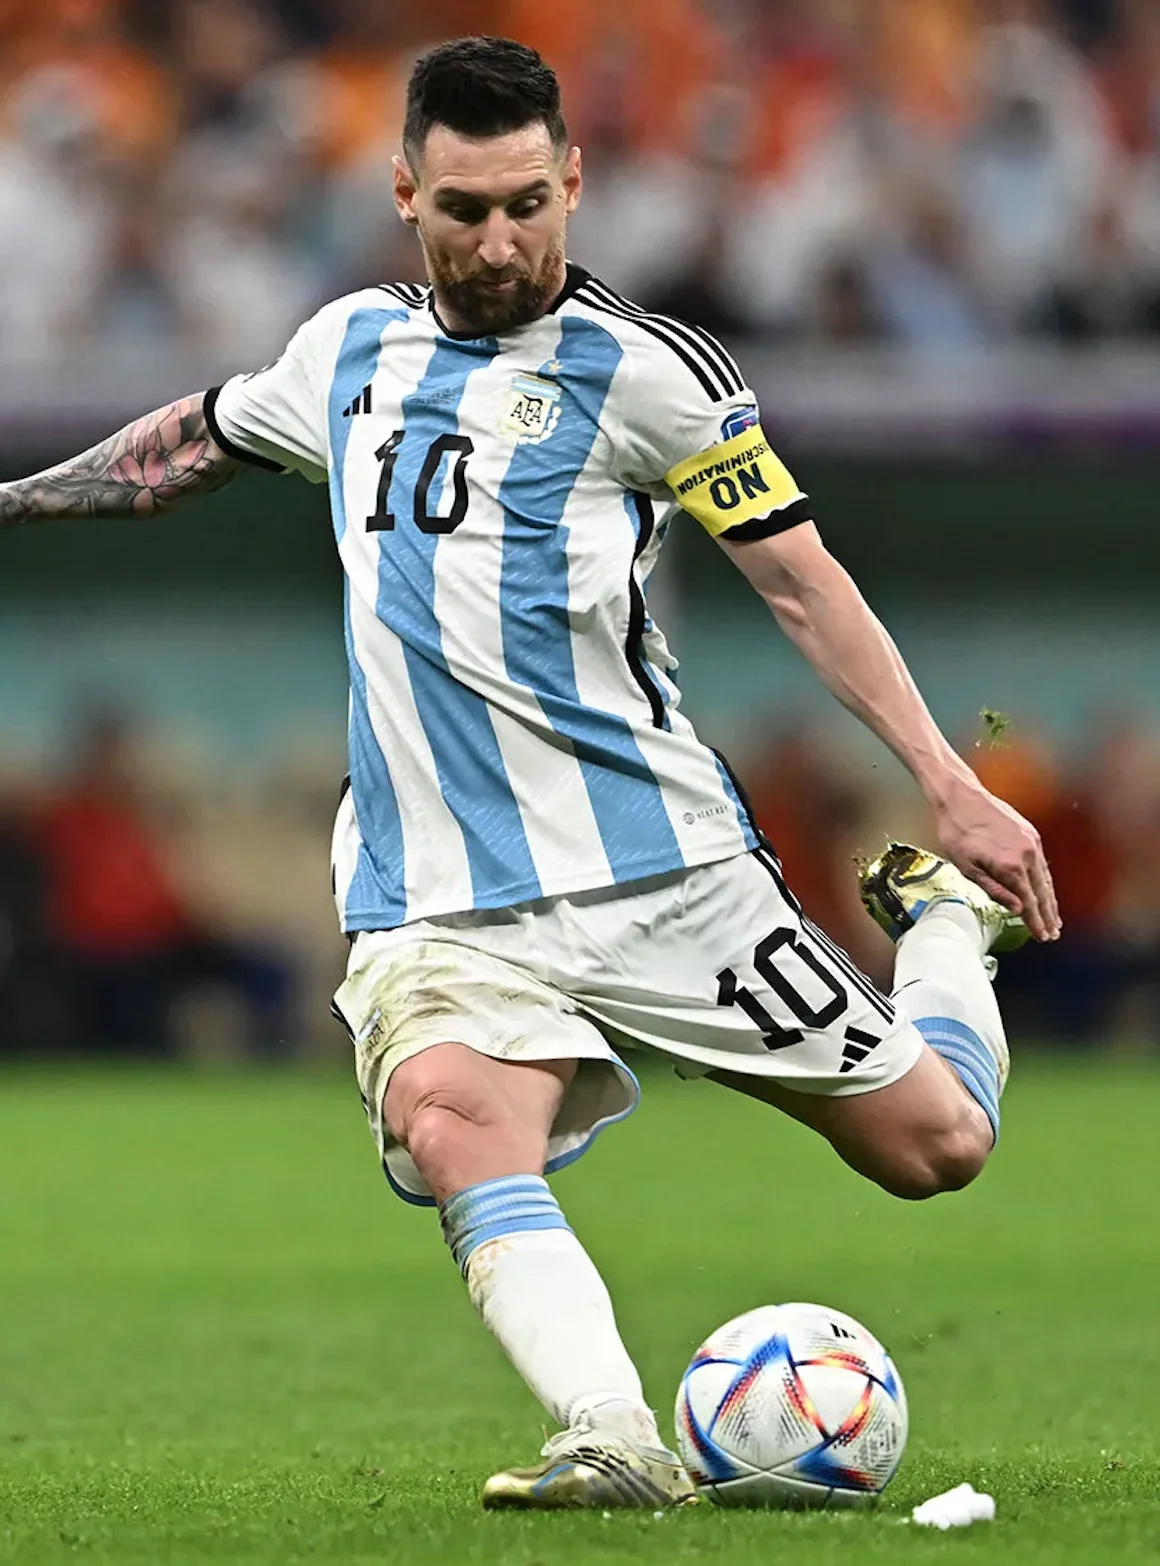 Léo Messi joueur de foot mieux payé